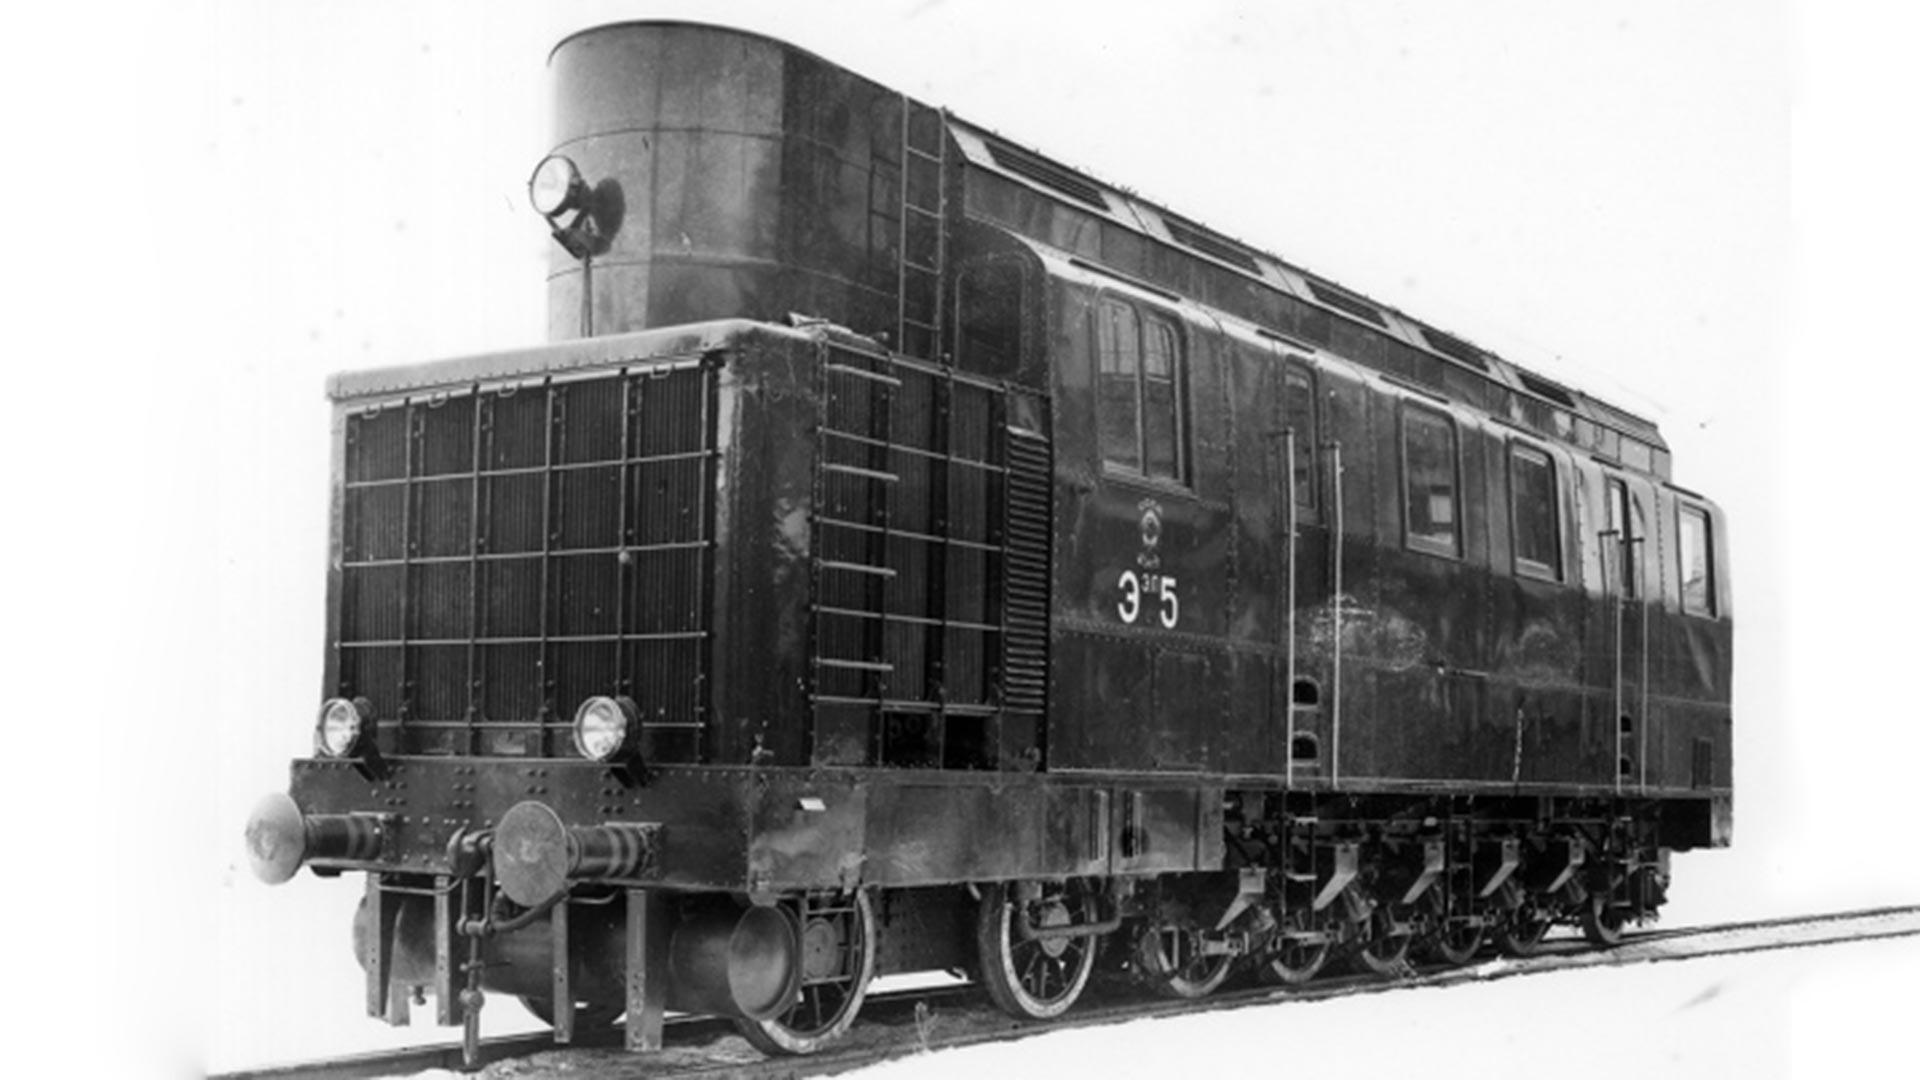 ‘E el’ class locomotives